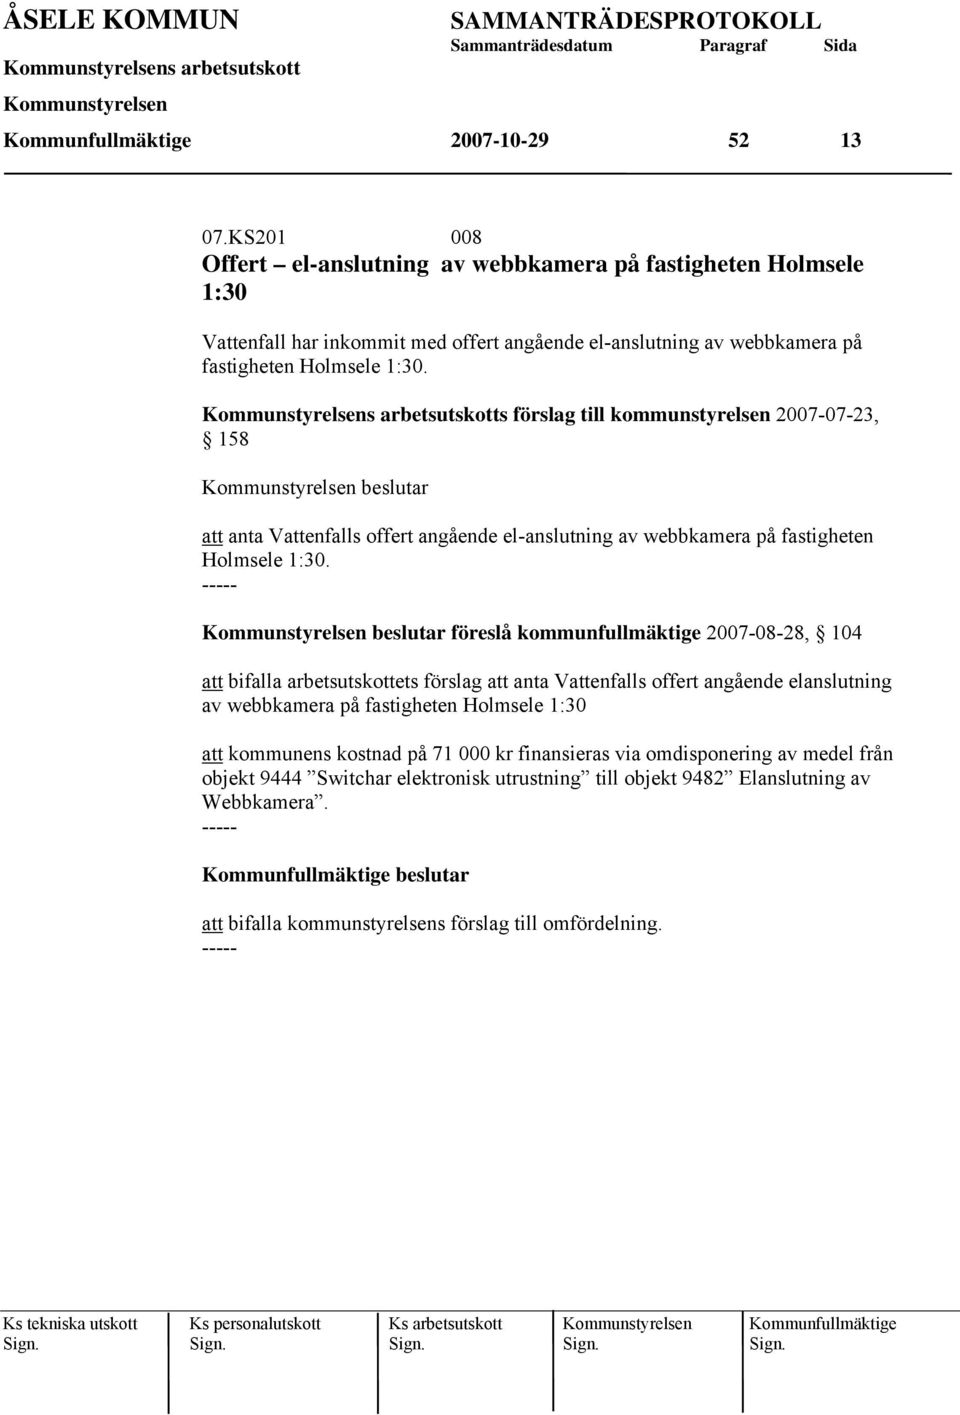 s förslag till kommunstyrelsen 2007-07-23, 158 beslutar att anta Vattenfalls offert angående el-anslutning av webbkamera på fastigheten Holmsele 1:30.